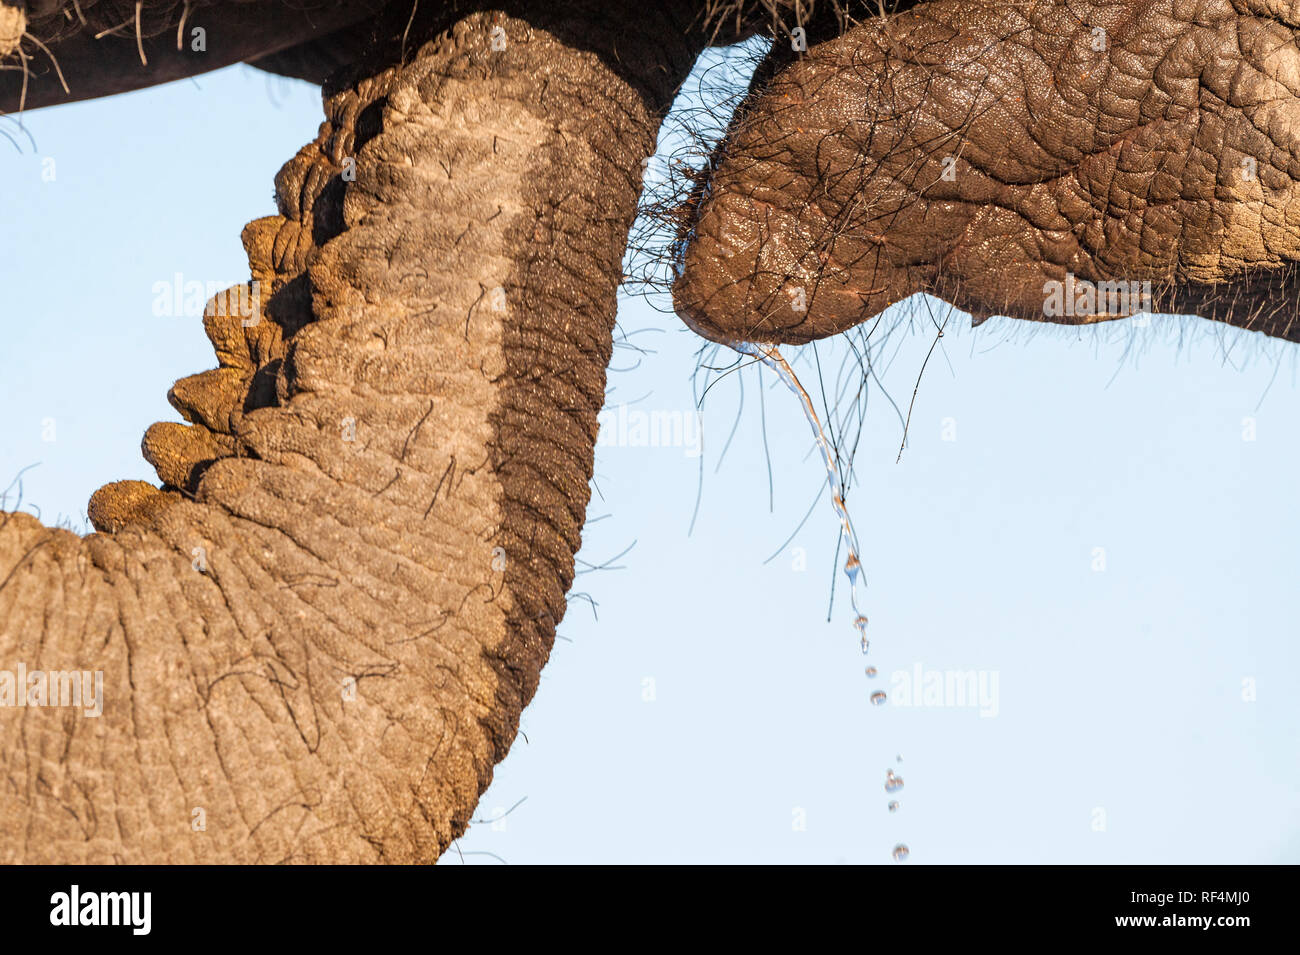 Eine Nahaufnahme eines Afrikanischen Elefanten Rüssel. Stockfoto